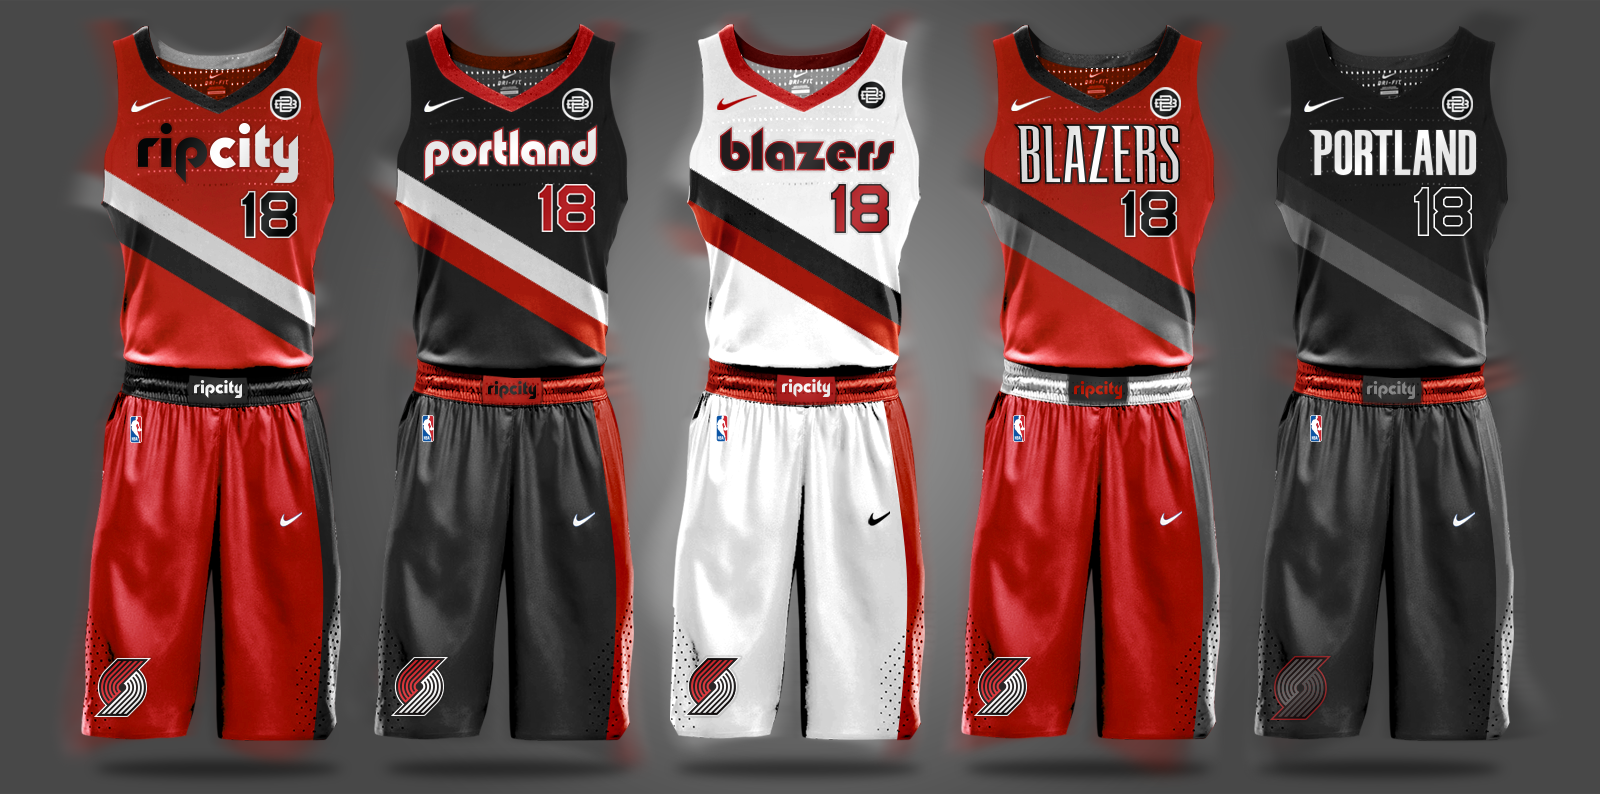 NBA Nike Uniform Concepts - I Am Brian Begley1600 x 794